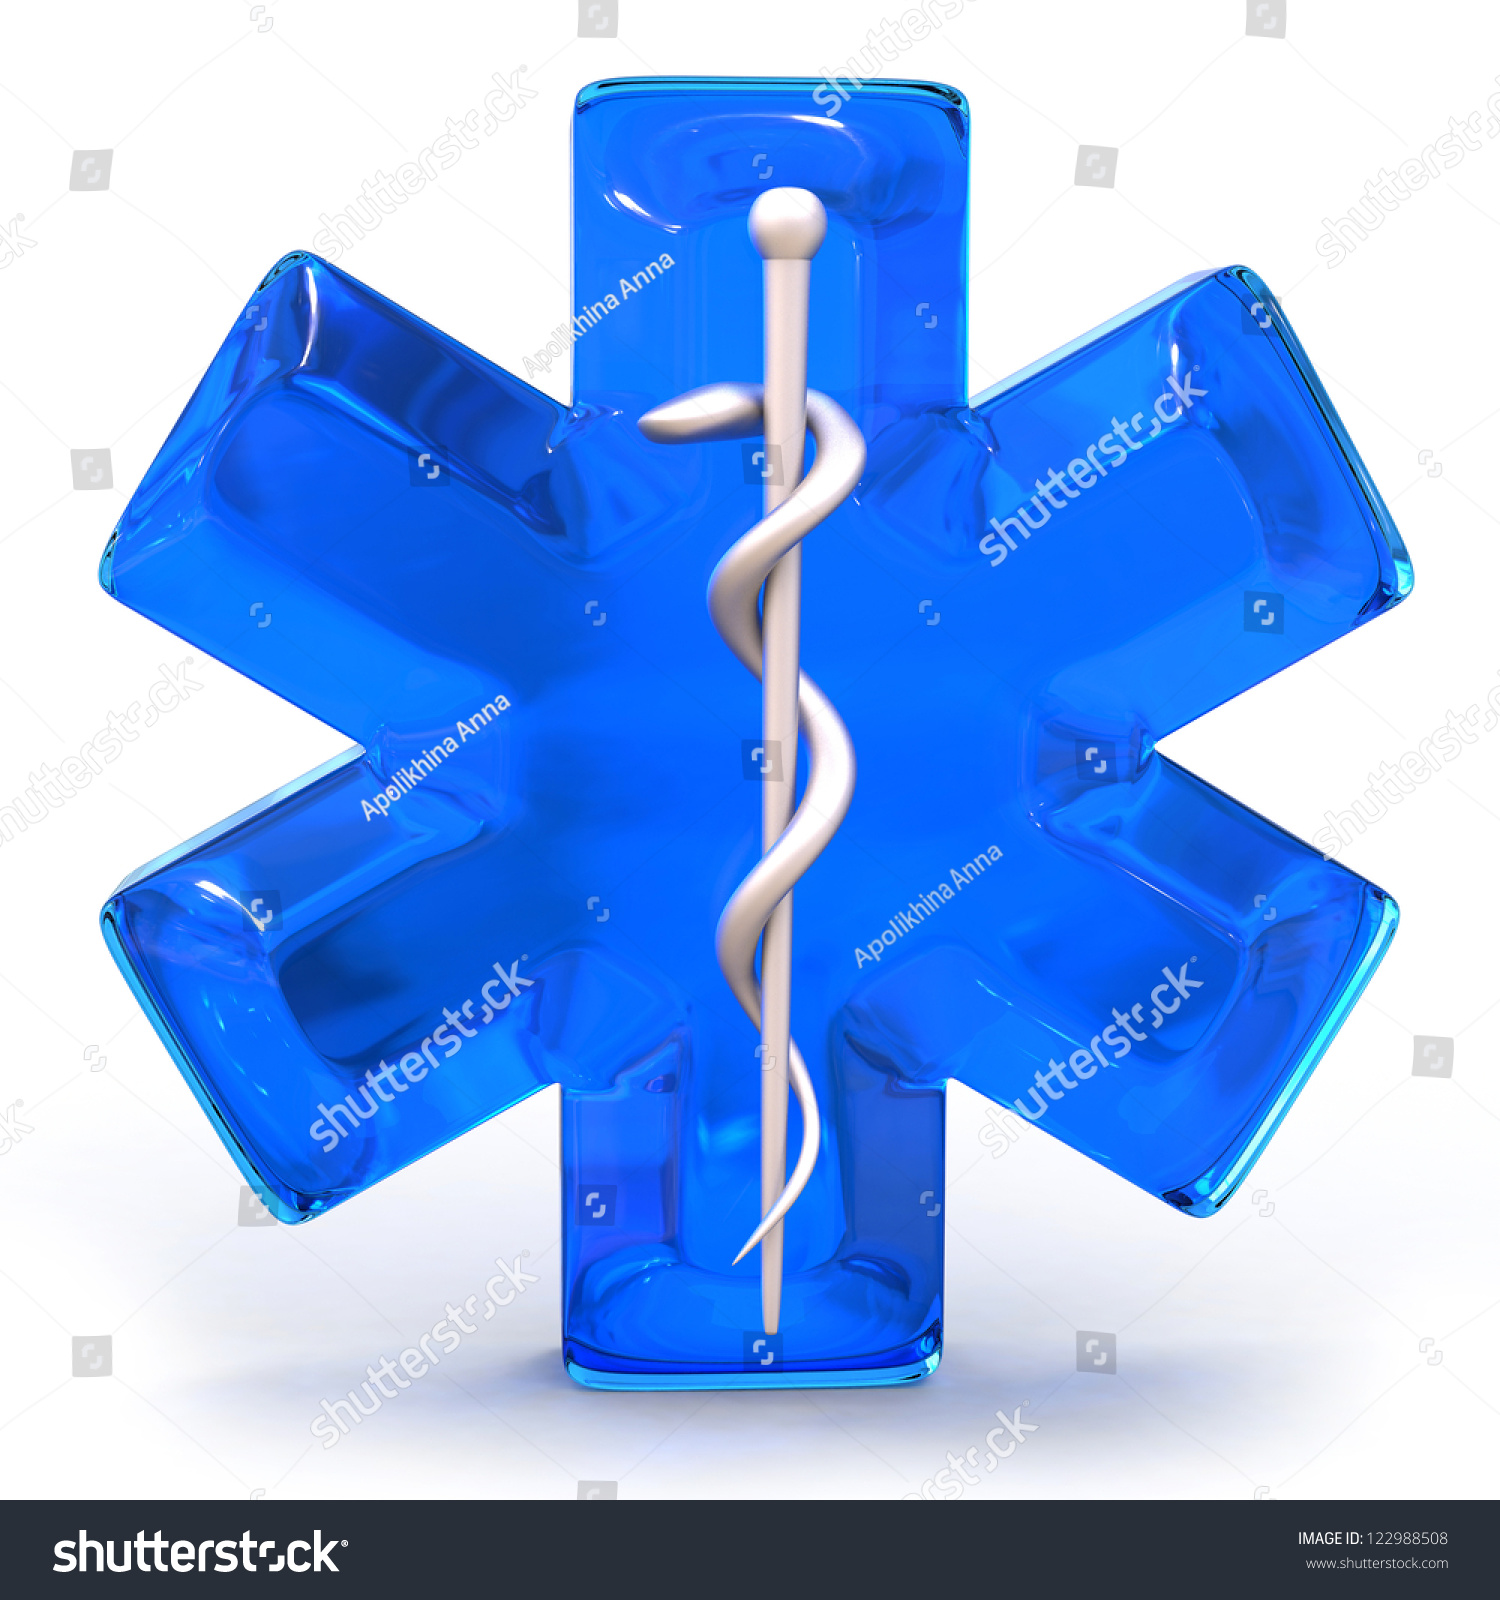 Blue Medical Symbol Isolated Over White Background Stock Photo ...